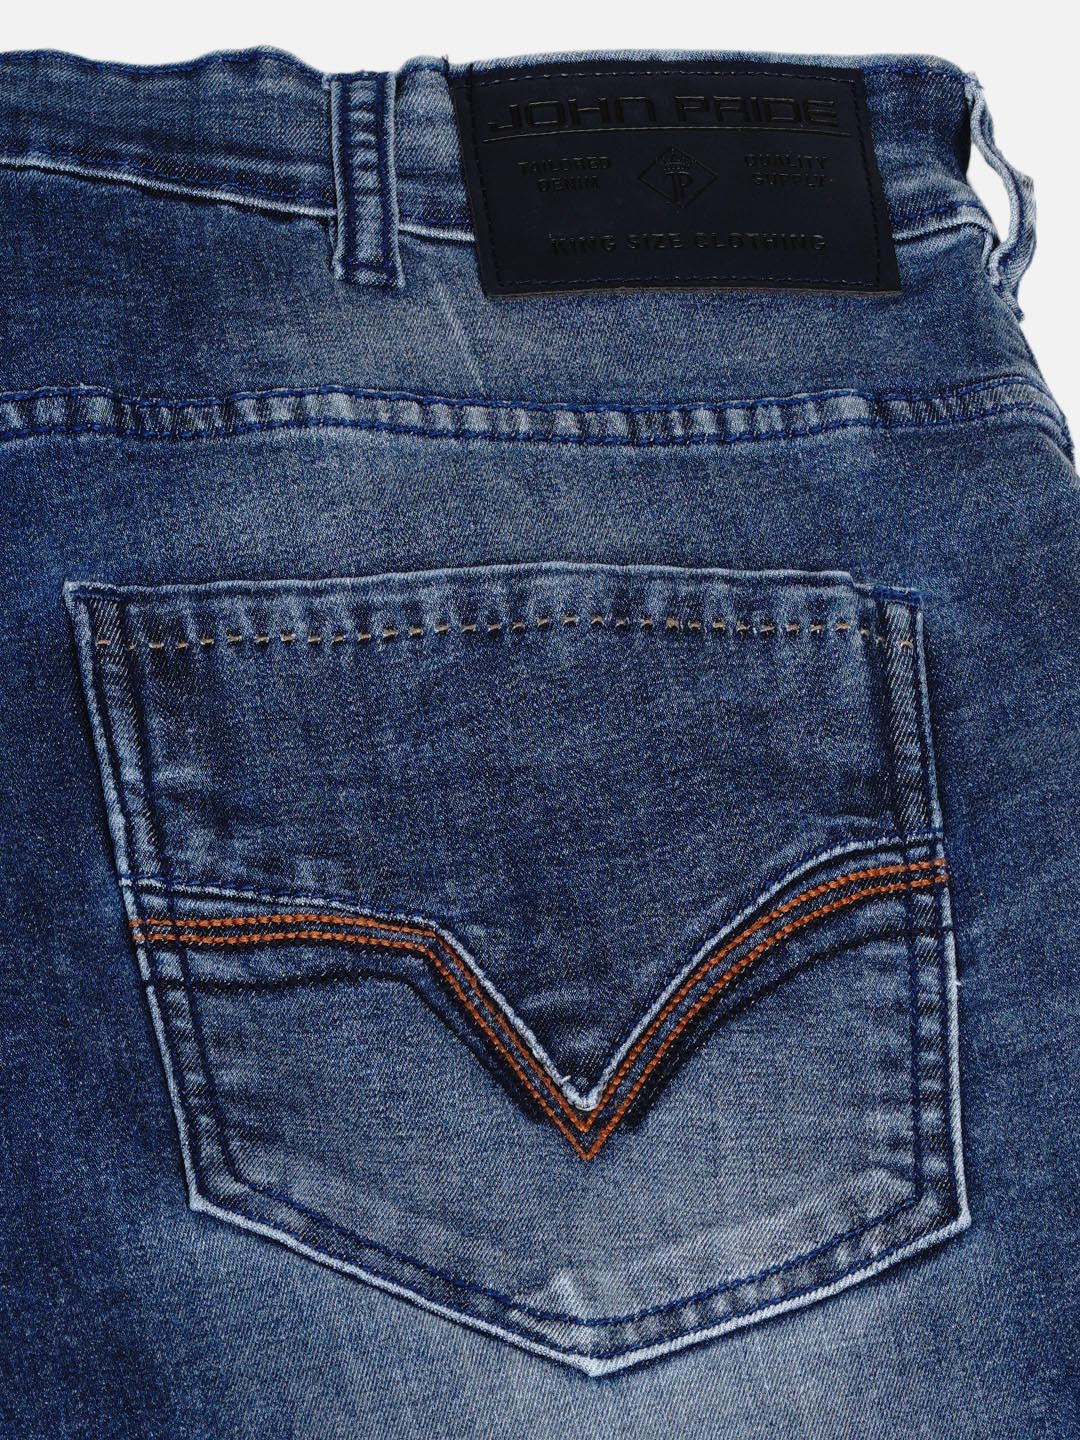 bottomwear/jeans/EJPJ25003/ejpj25003-2.jpg